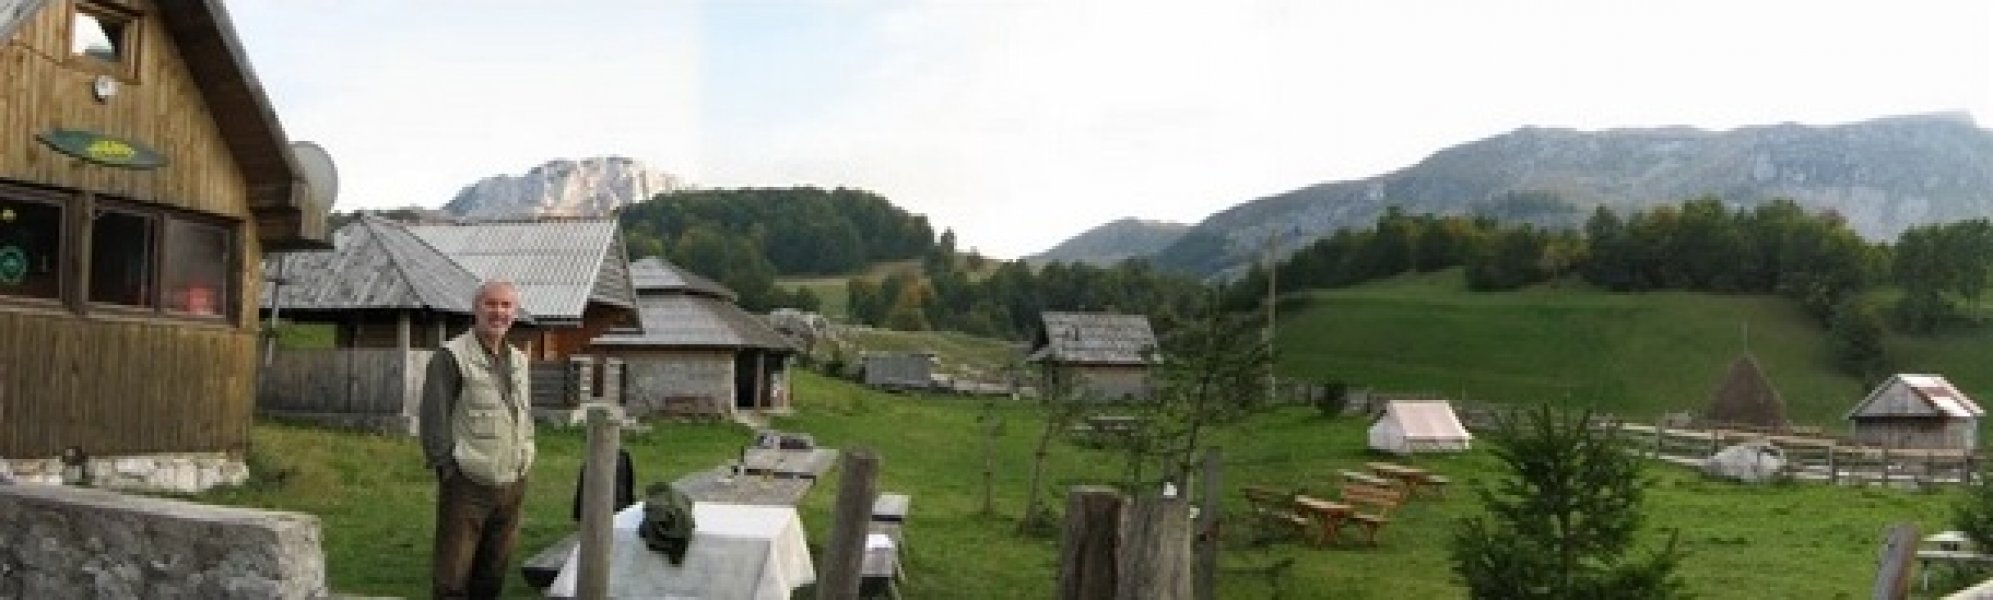 wigwam-selo-visocica